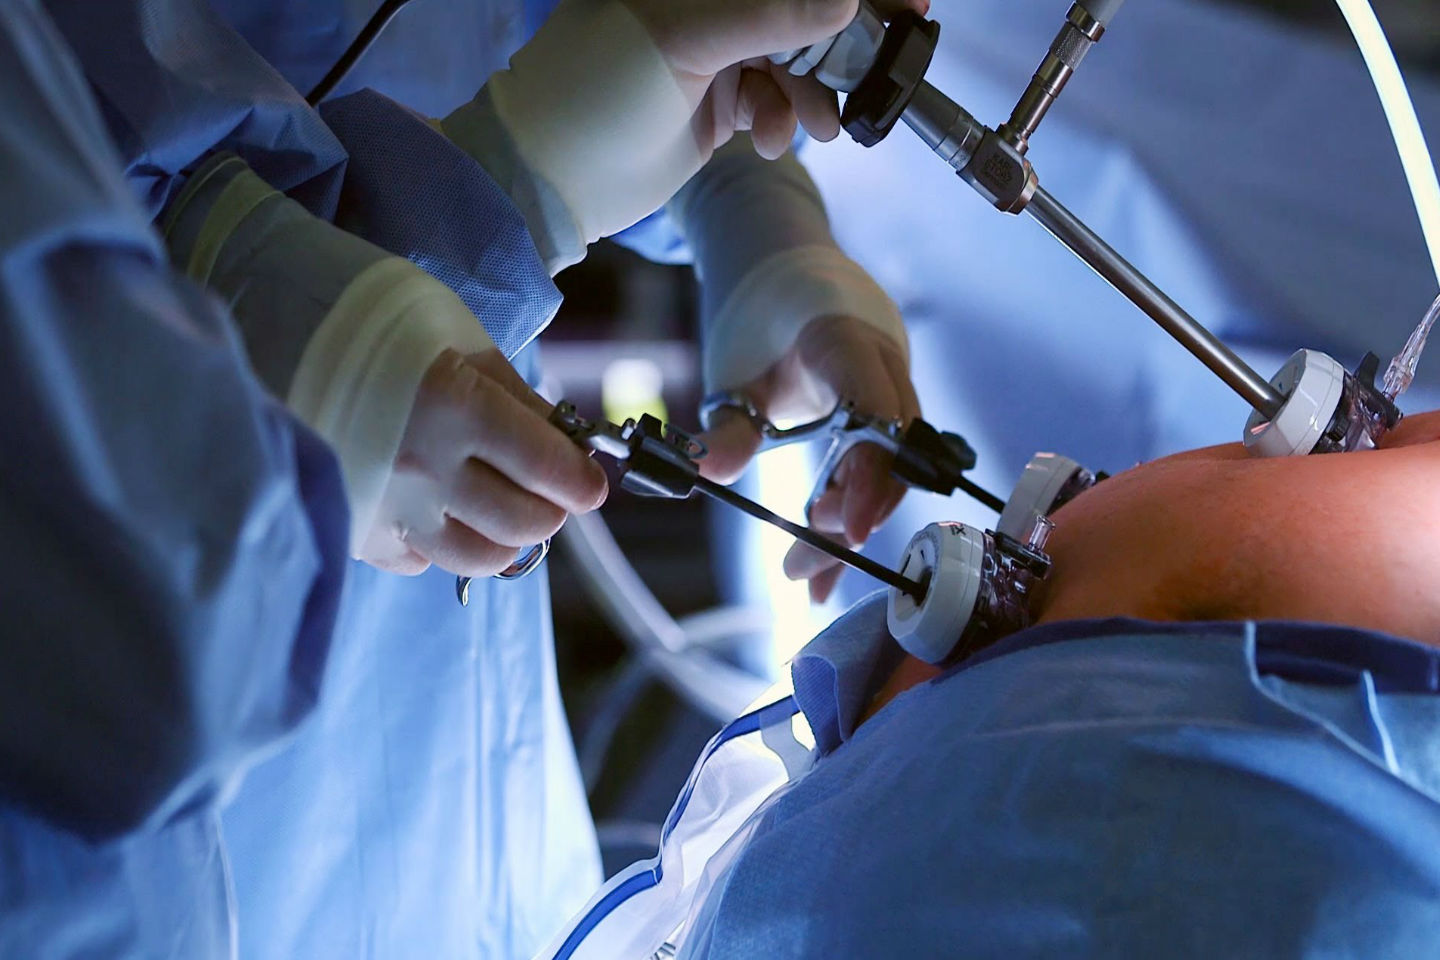 Η βαριατρική χειρουργική βελτιώνει την κατάσταση της καρδιάς